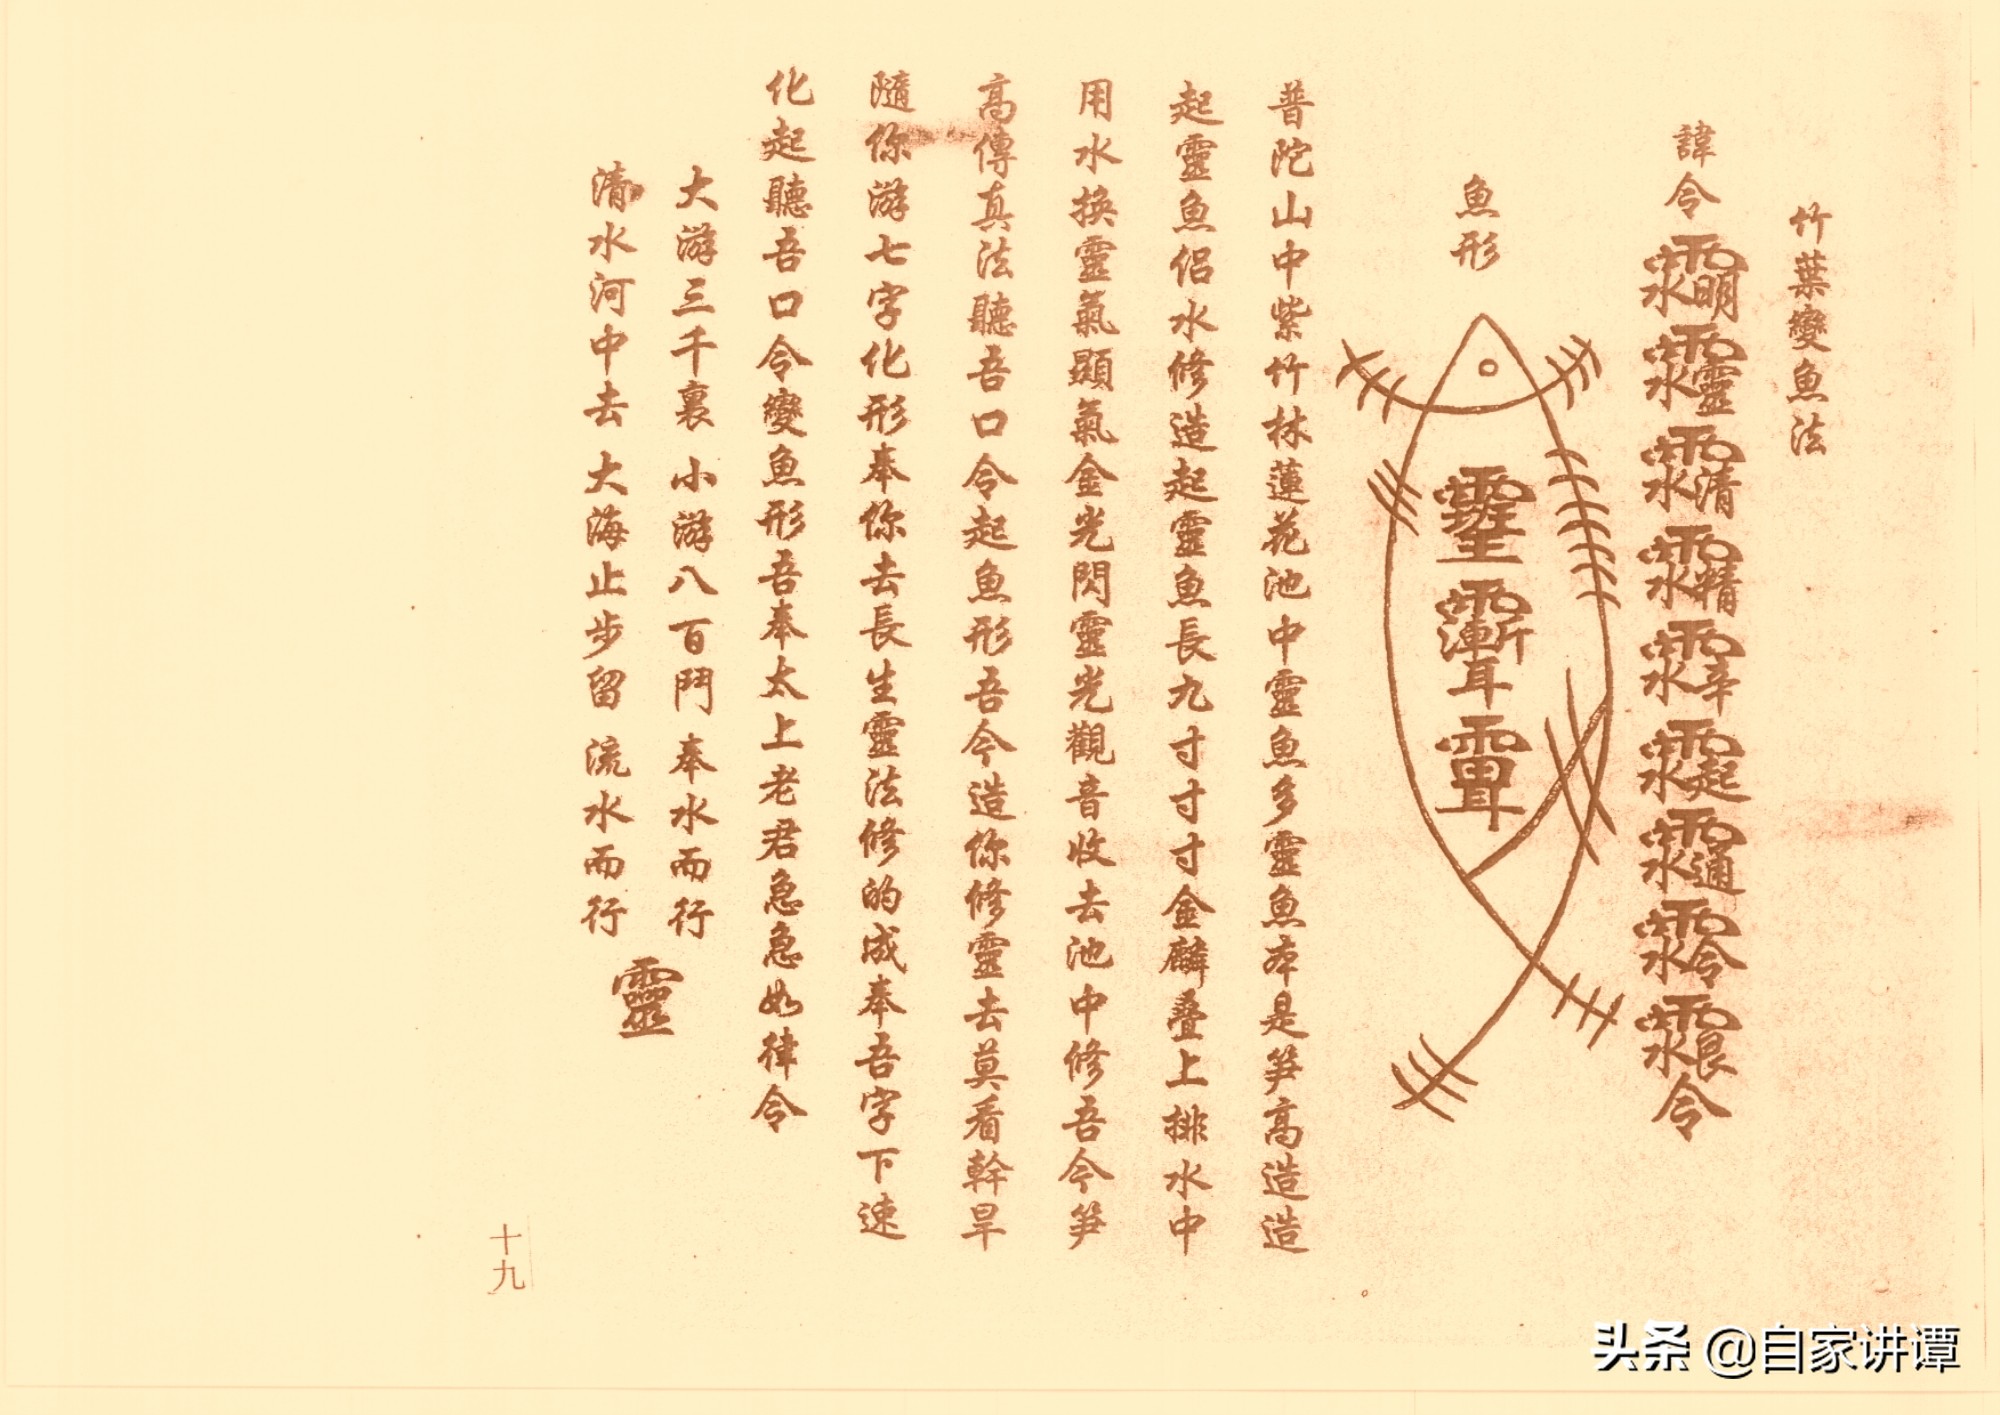 符咒类古籍——《鲁班经符法经文册》